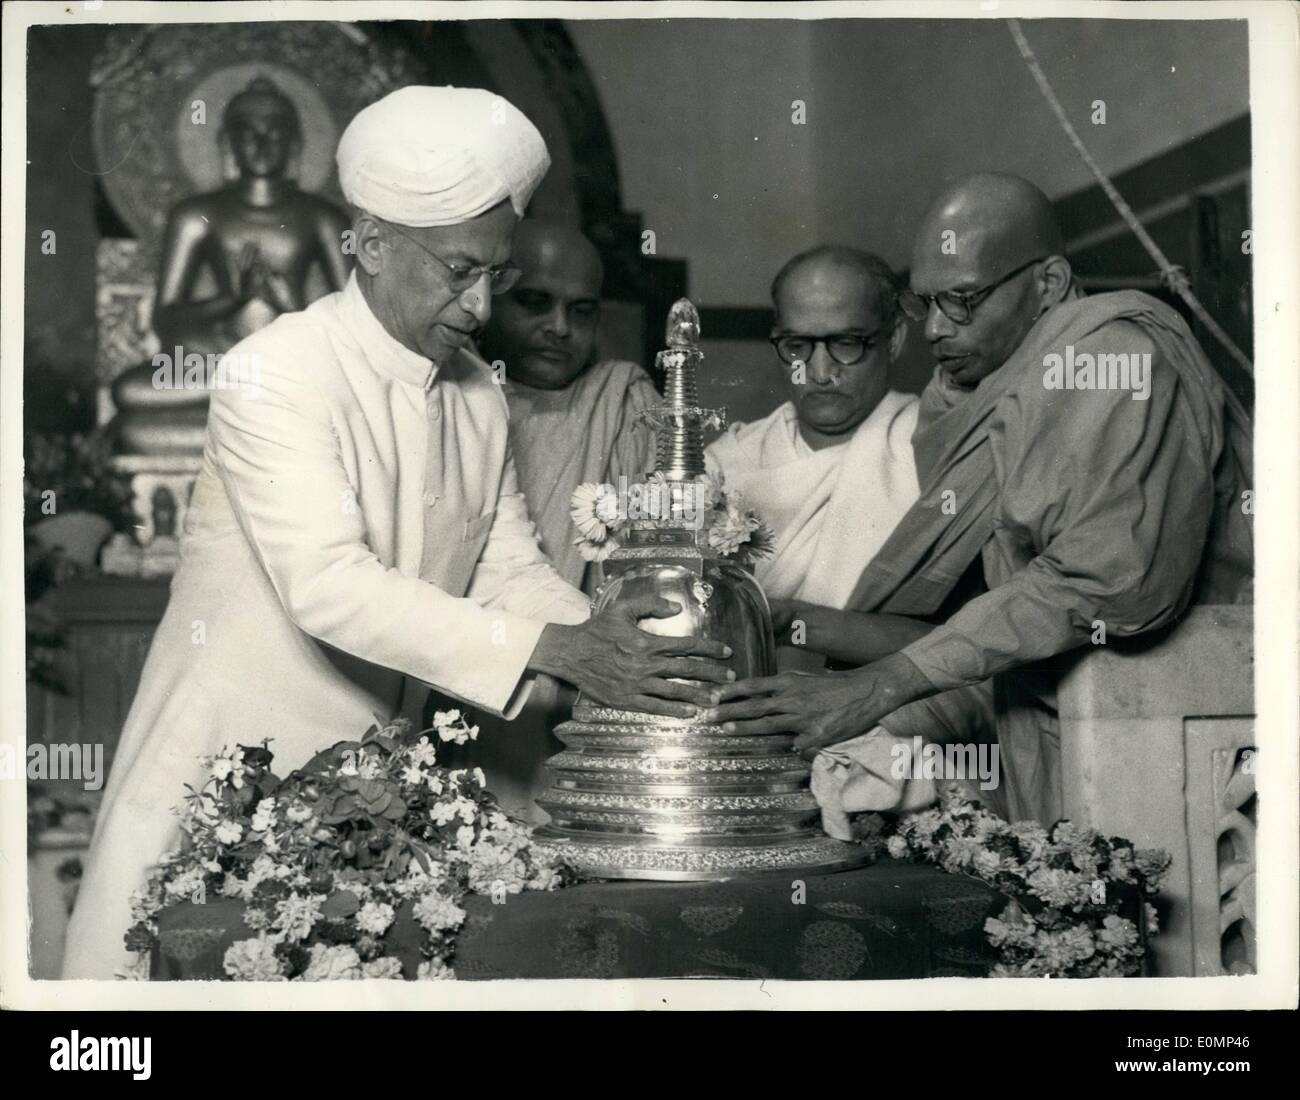 Febbraio 02, 1956 - Sig.ra Pandit prende reliquie buddhiste in India.: quando la sig.ra Pandit arrivato in aereo a Nuova Delhi domenica scorsa, ha portato con sé le sacre reliquie di santi buddisti da Londra. Le reliquie furono ricevuti dal primo ministro, sig. Nehru, consegnò mai al Mahabodhi Society of India. Le reliquie, che la sig.ra Pandit portato in India sono di dieci santi buddisti e sono state nel British Museum a Londra per più di cento anni e che sono stati consegnati in India attraverso la Sig.ra Pandit Foto Stock